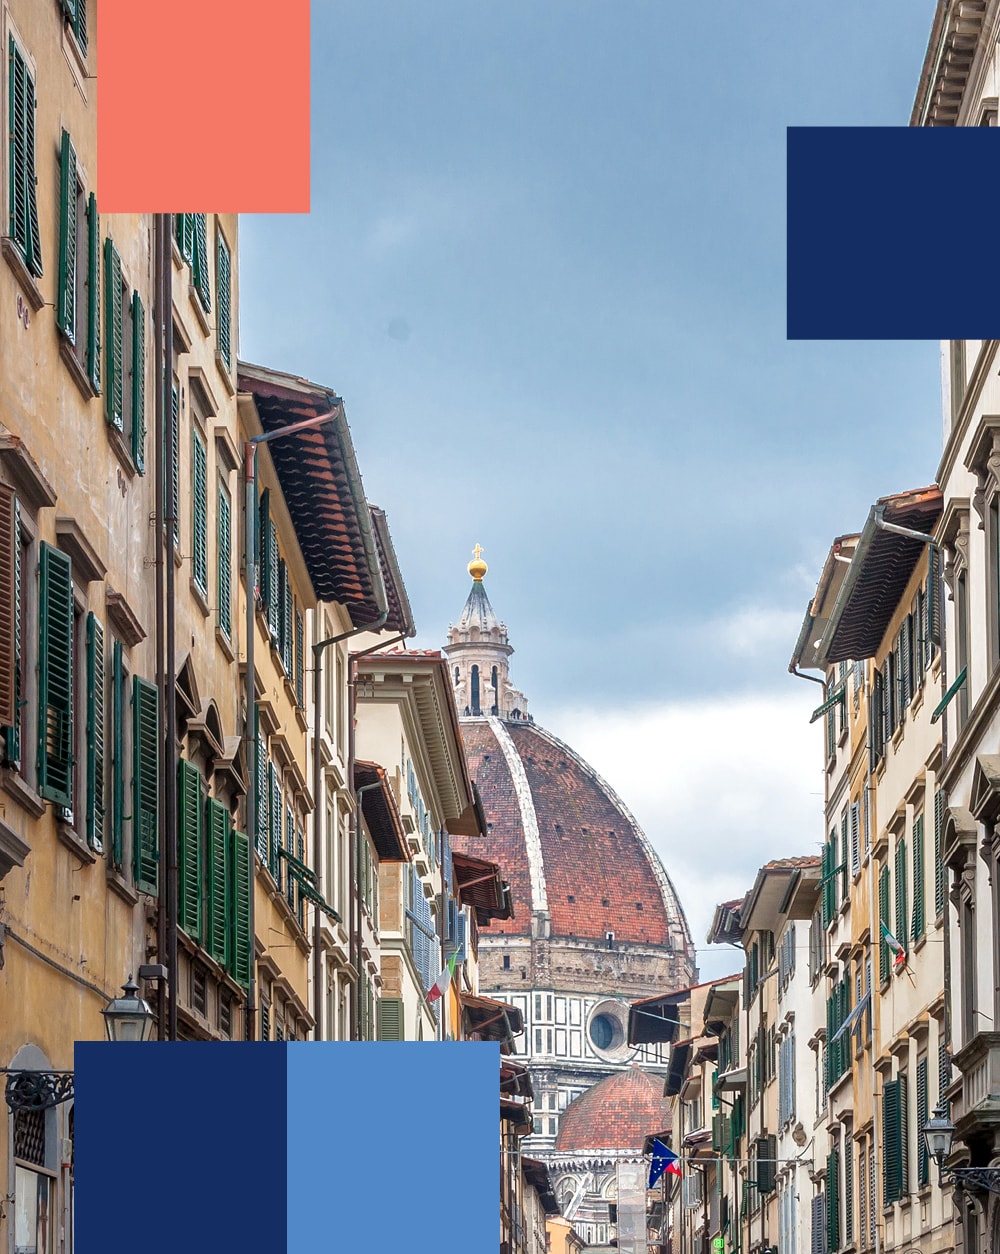 Vista de la cúpula de Brunelleschi desde una calle de Florencia - mobile